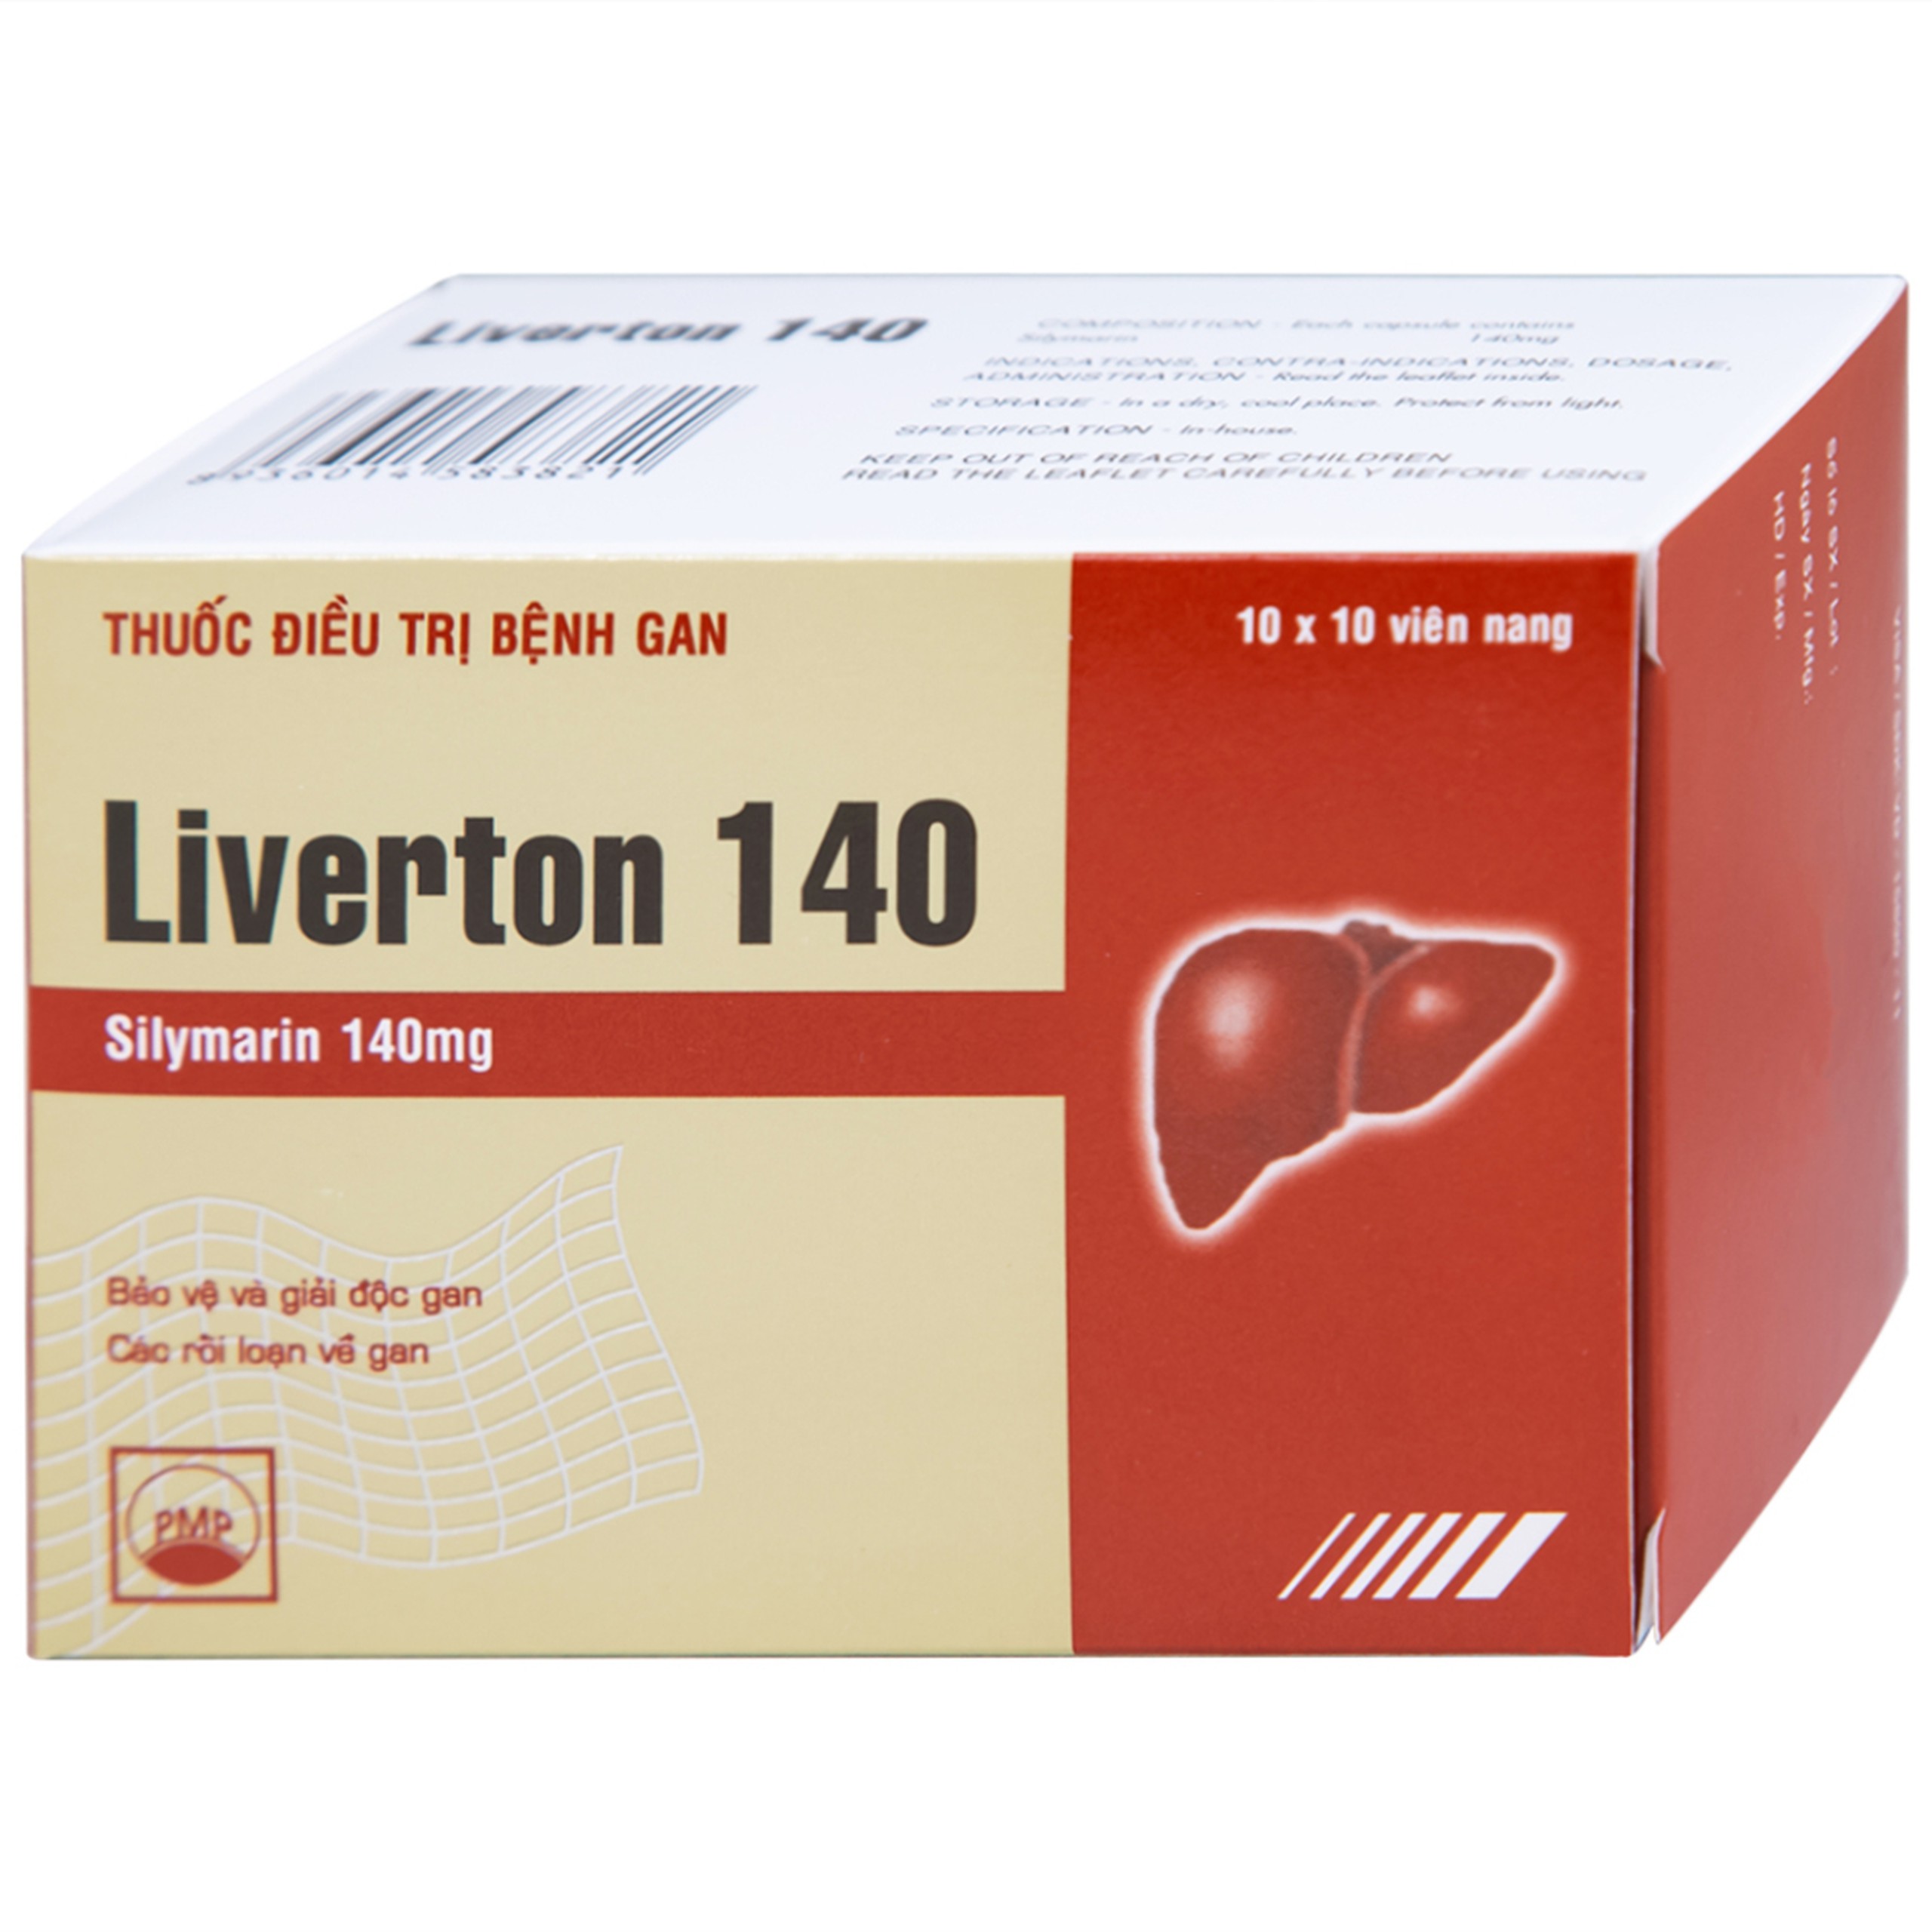 Thuốc Liverton 140 Pymepharco điều trị bệnh gan, giải độc gan, rối loạn về gan (10 vỉ x 10 viên) 